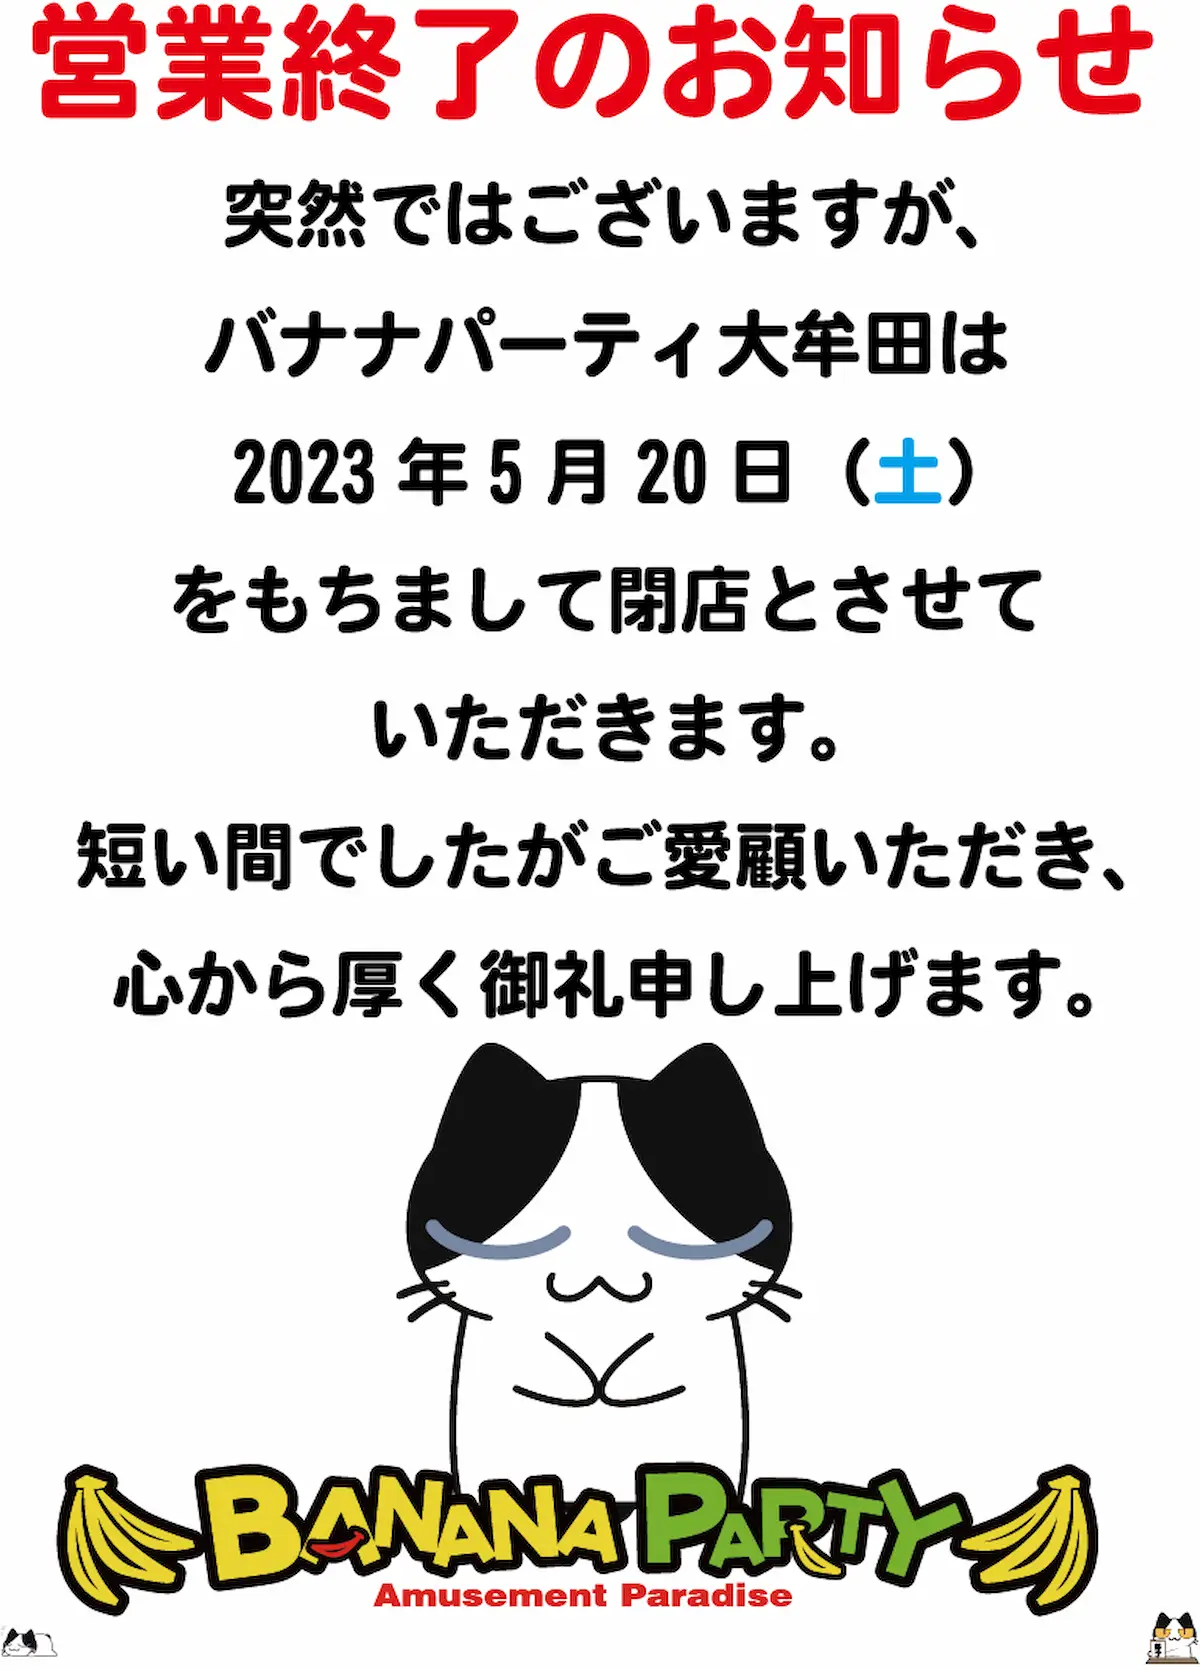 バナナパーティ大牟田が5月20日をもって閉店するみたい。大牟田のアミューズメント施設